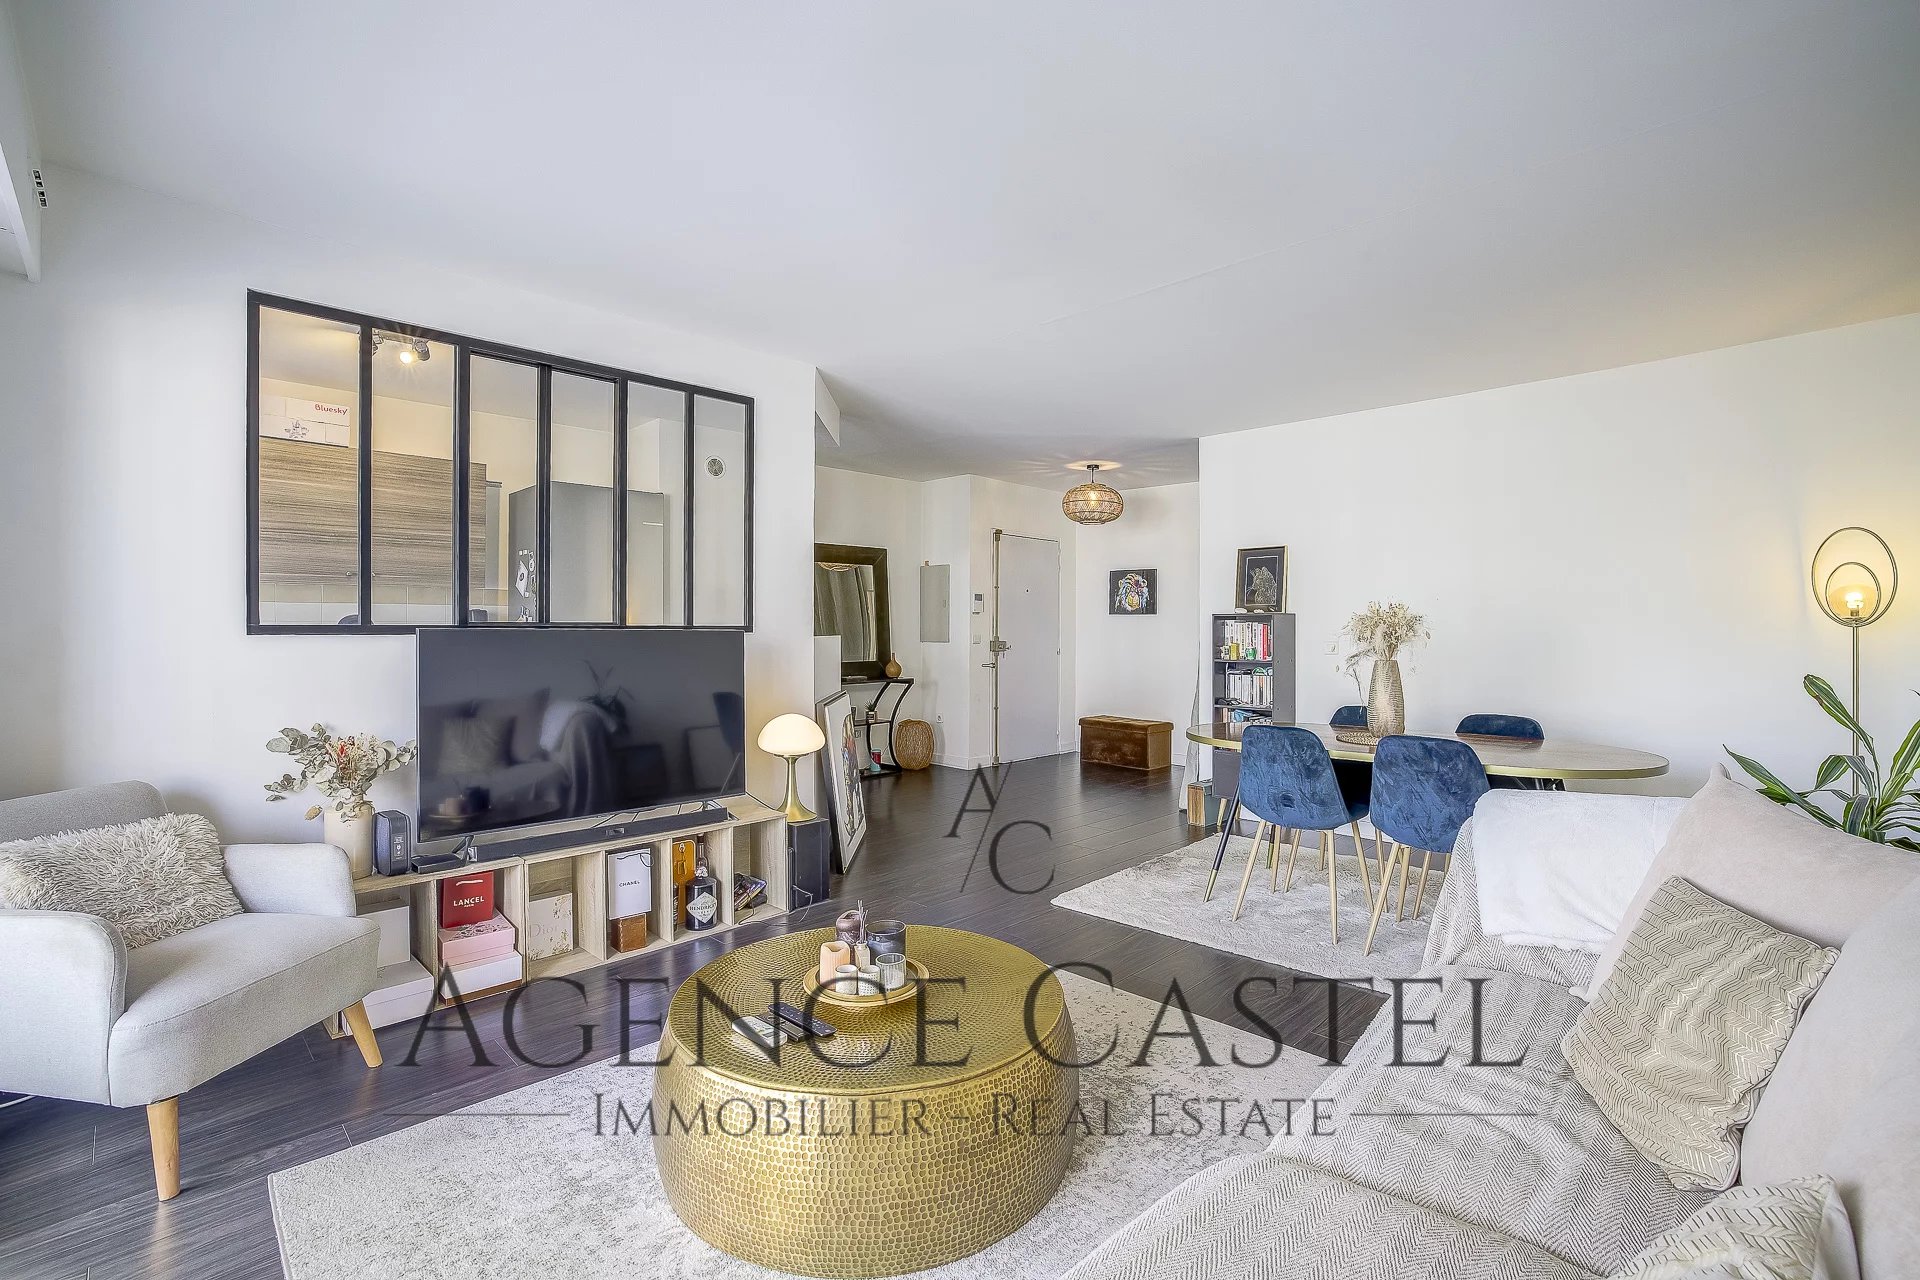 Vente Appartement 73m² 3 Pièces à Nice (06300) - Agence Castel